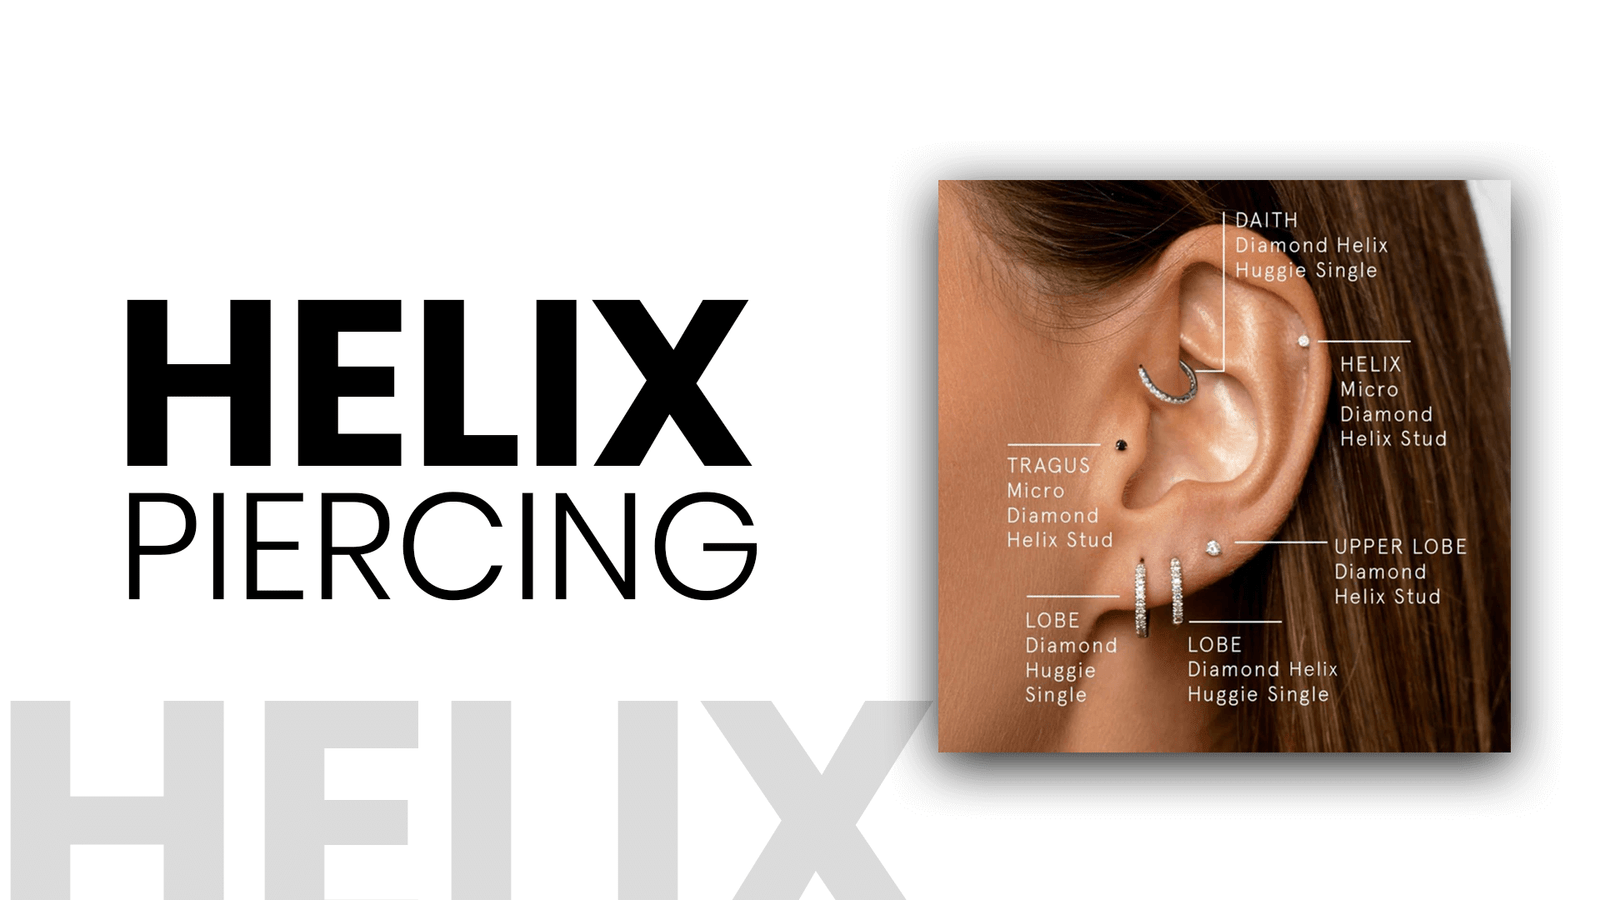 Helix piercing